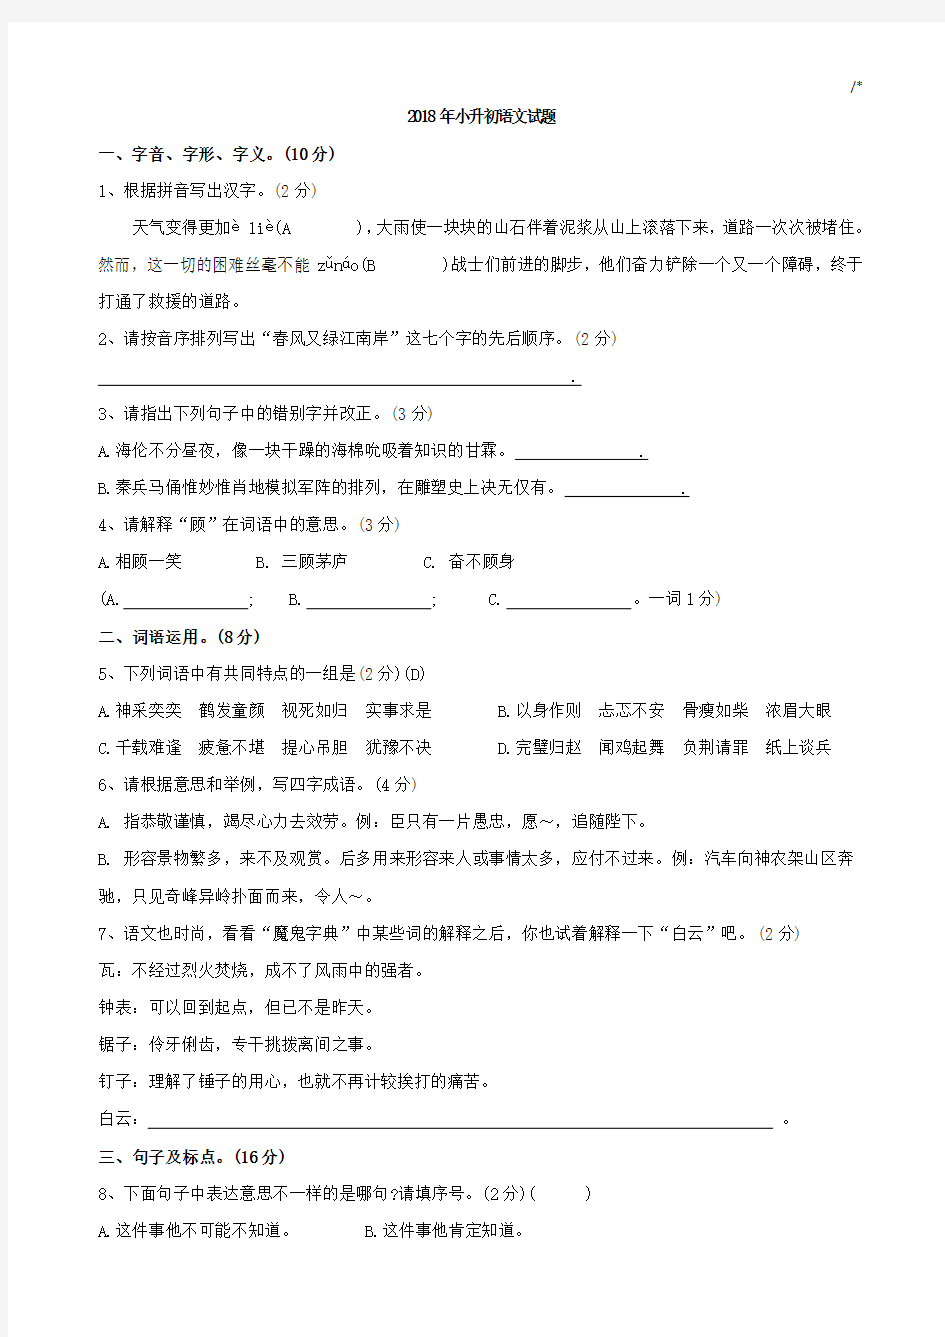 2018年度小学升初中语文试题